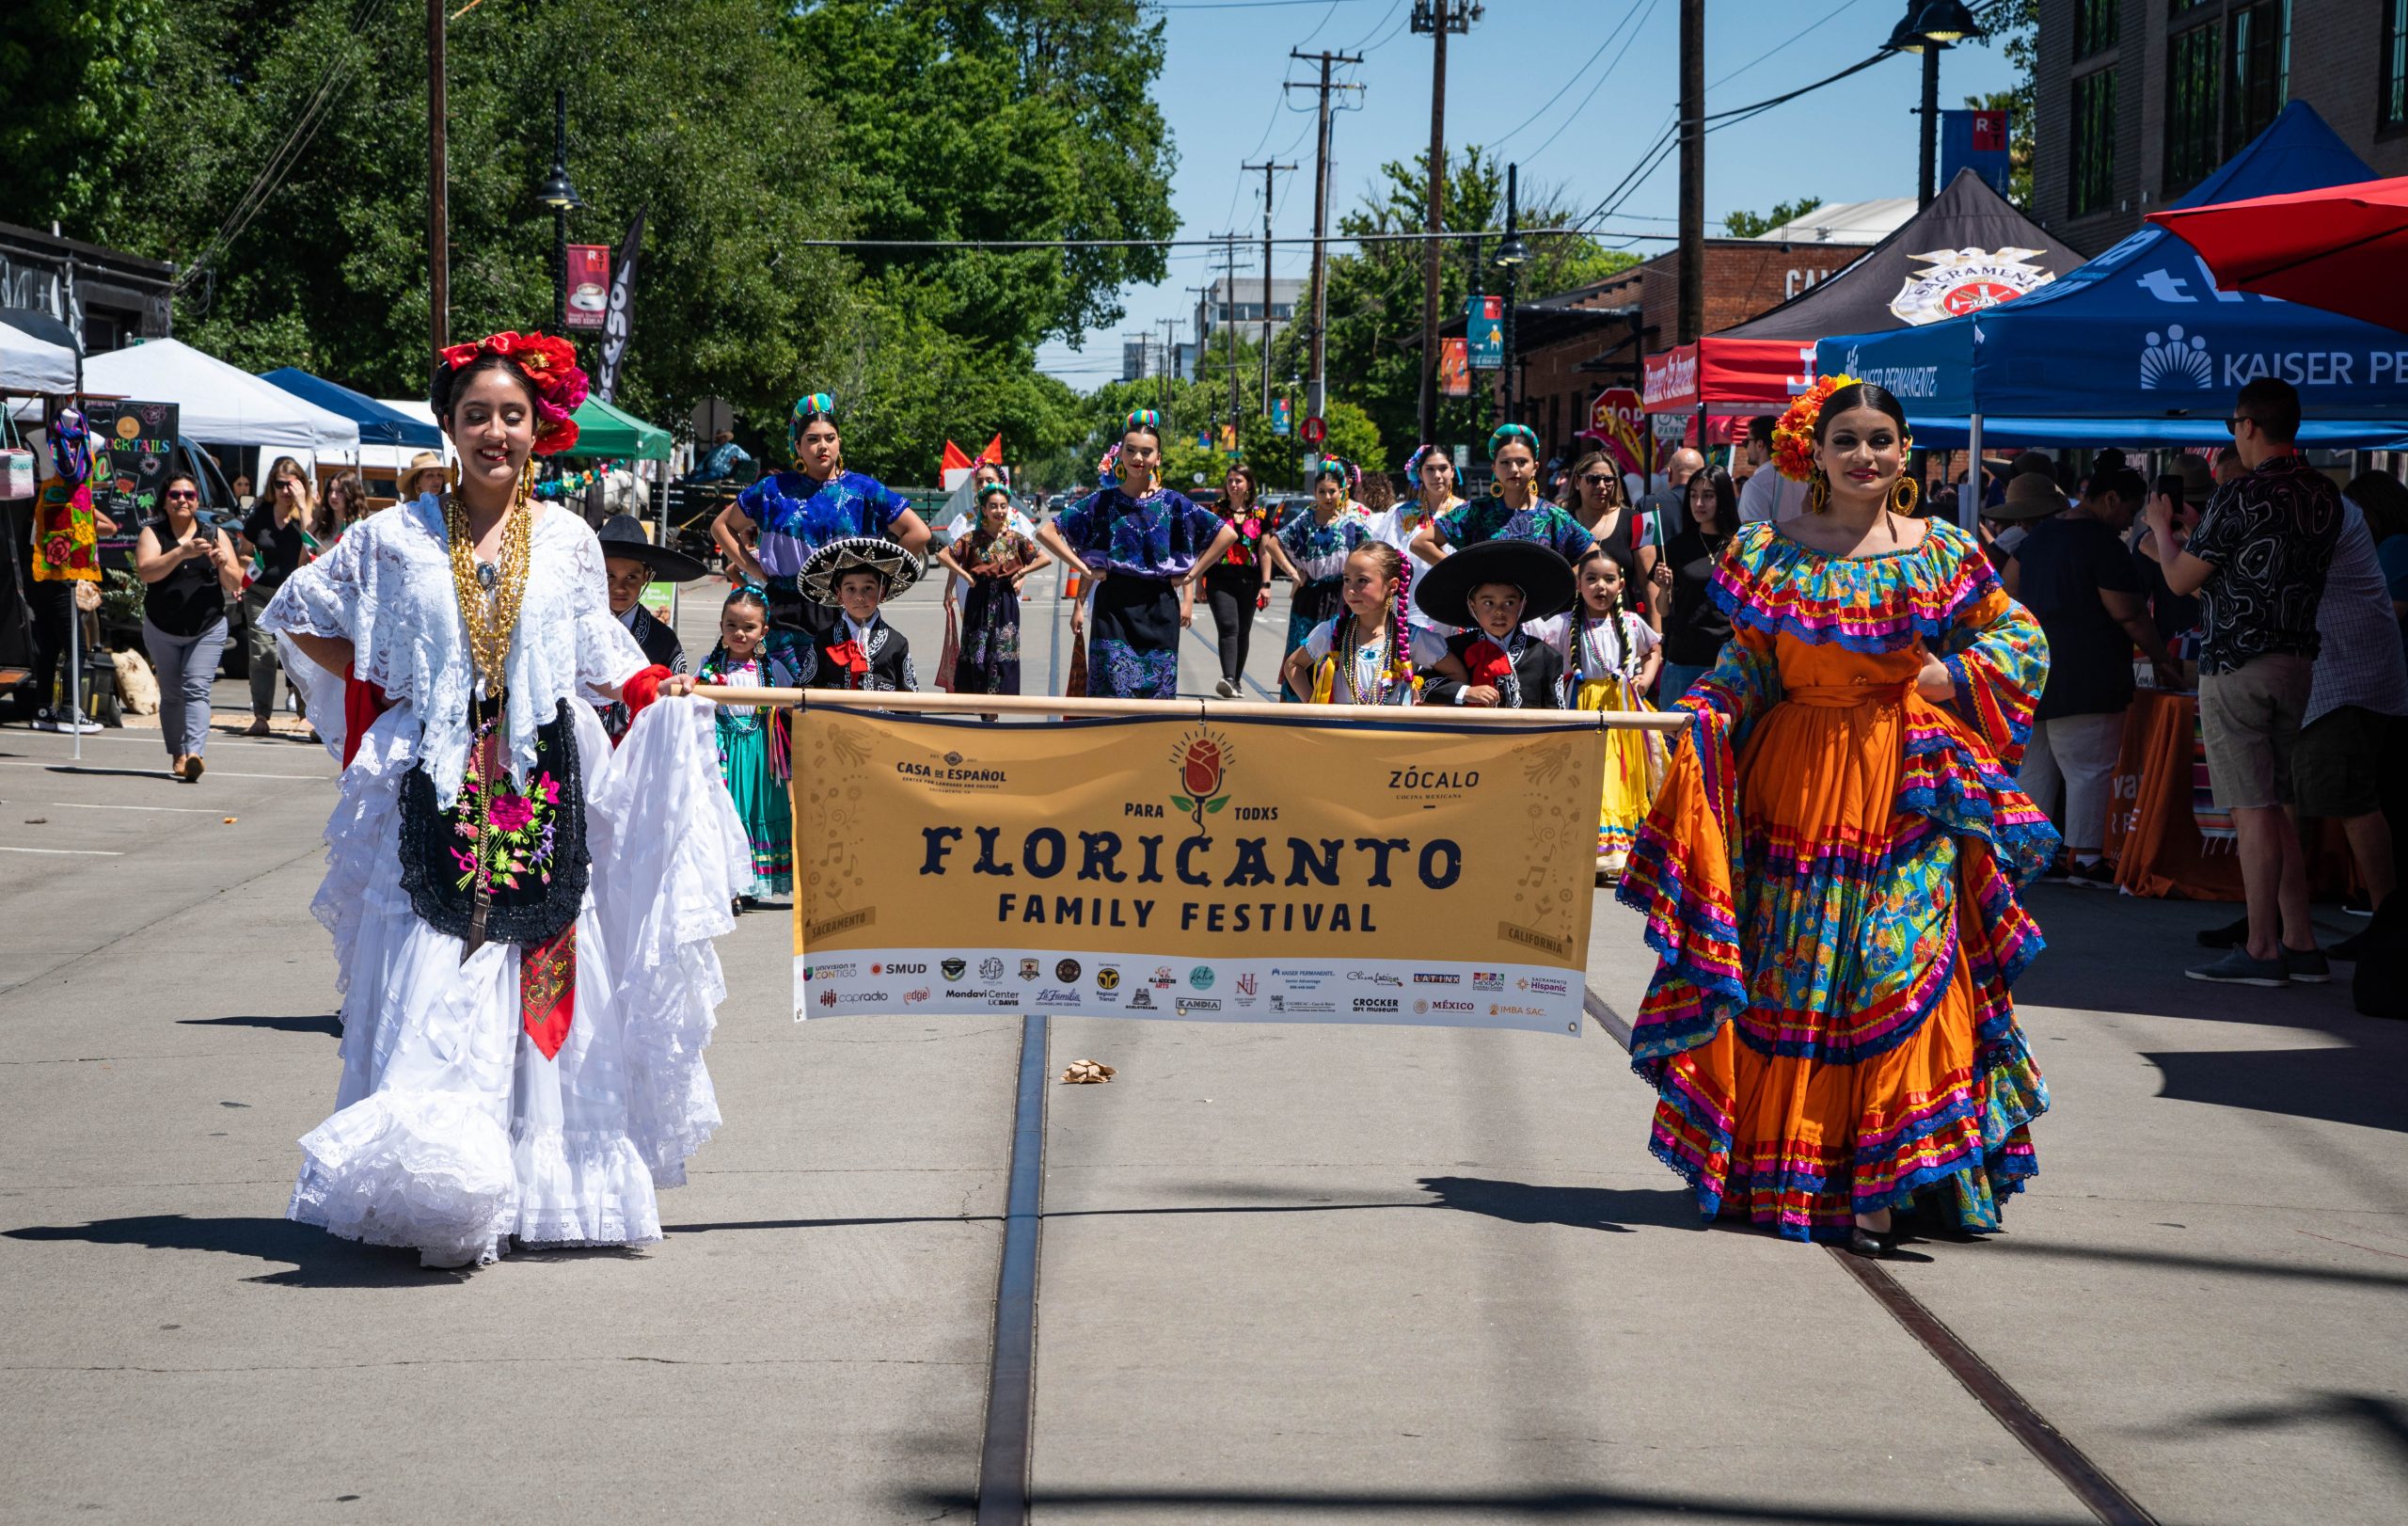 sacramento, california, mexican culture, event, floricanto family festival, banner, parade